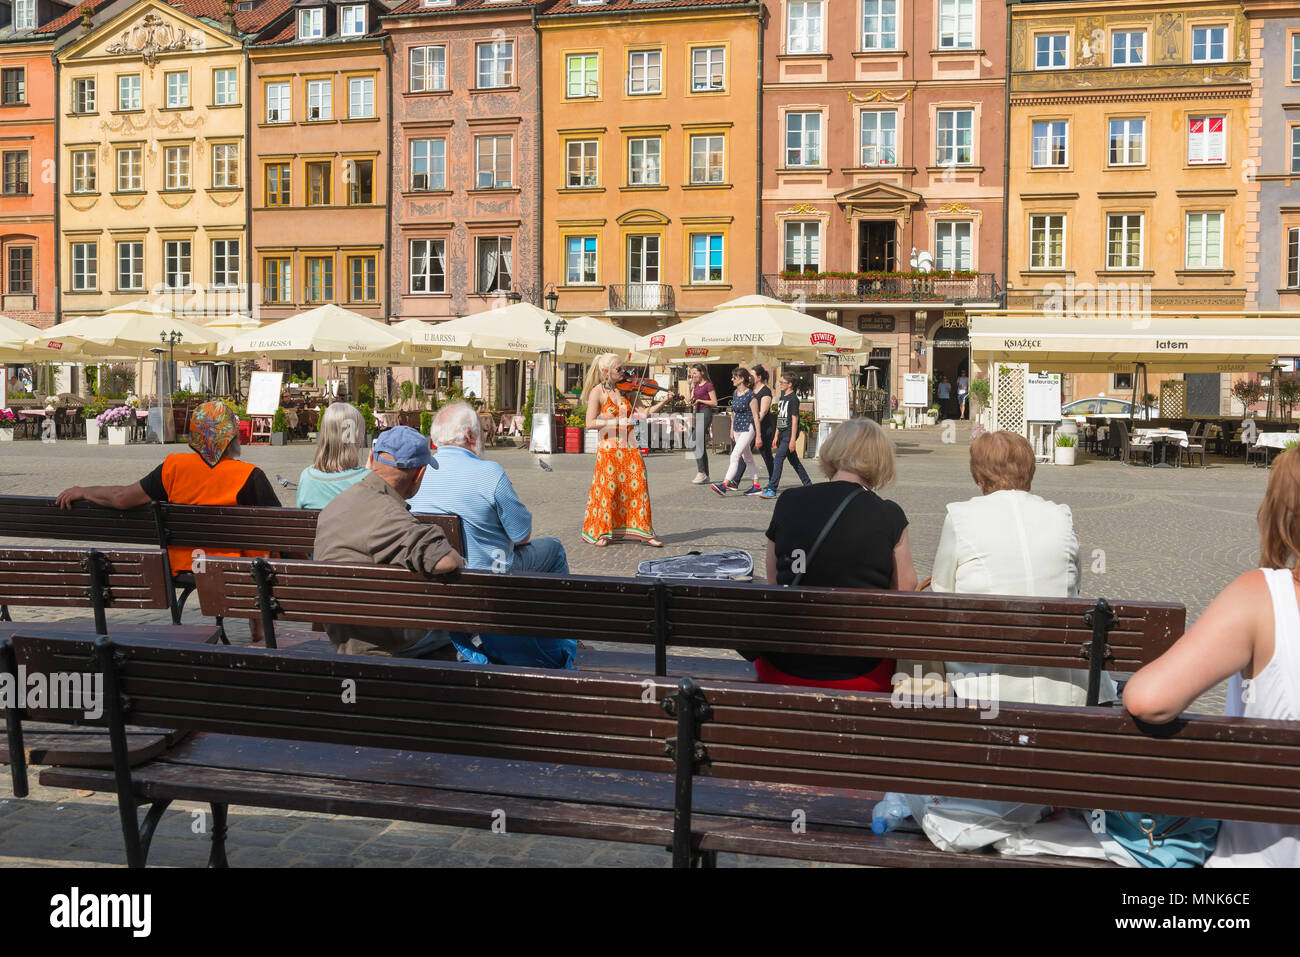 La vieille ville de Varsovie, un violoniste reçoit un groupe de personnes assises sur des bancs dans l'historique place de la vieille ville de Varsovie, Pologne. Banque D'Images